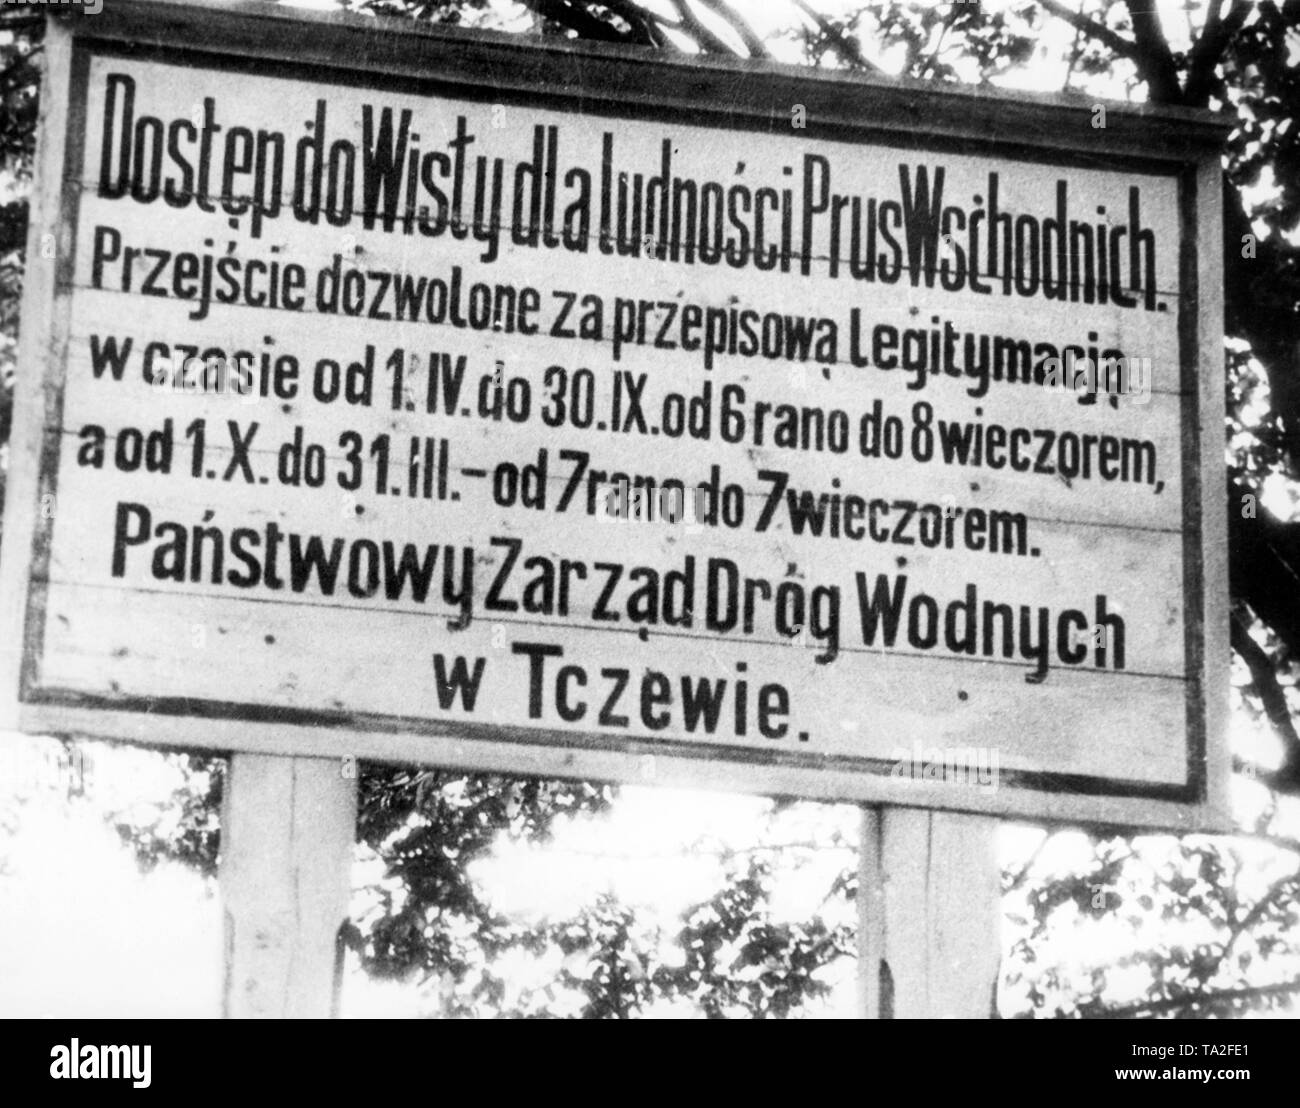 Ein Schild am Eingang der Weichsel zeigt Grenzgänger Grenzgänger aus Deutschland, die die Grenze nur an bestimmten Tagen überqueren können. Obwohl es für Deutsche gedacht ist, die Schrift ist in polnischer Sprache. Stockfoto